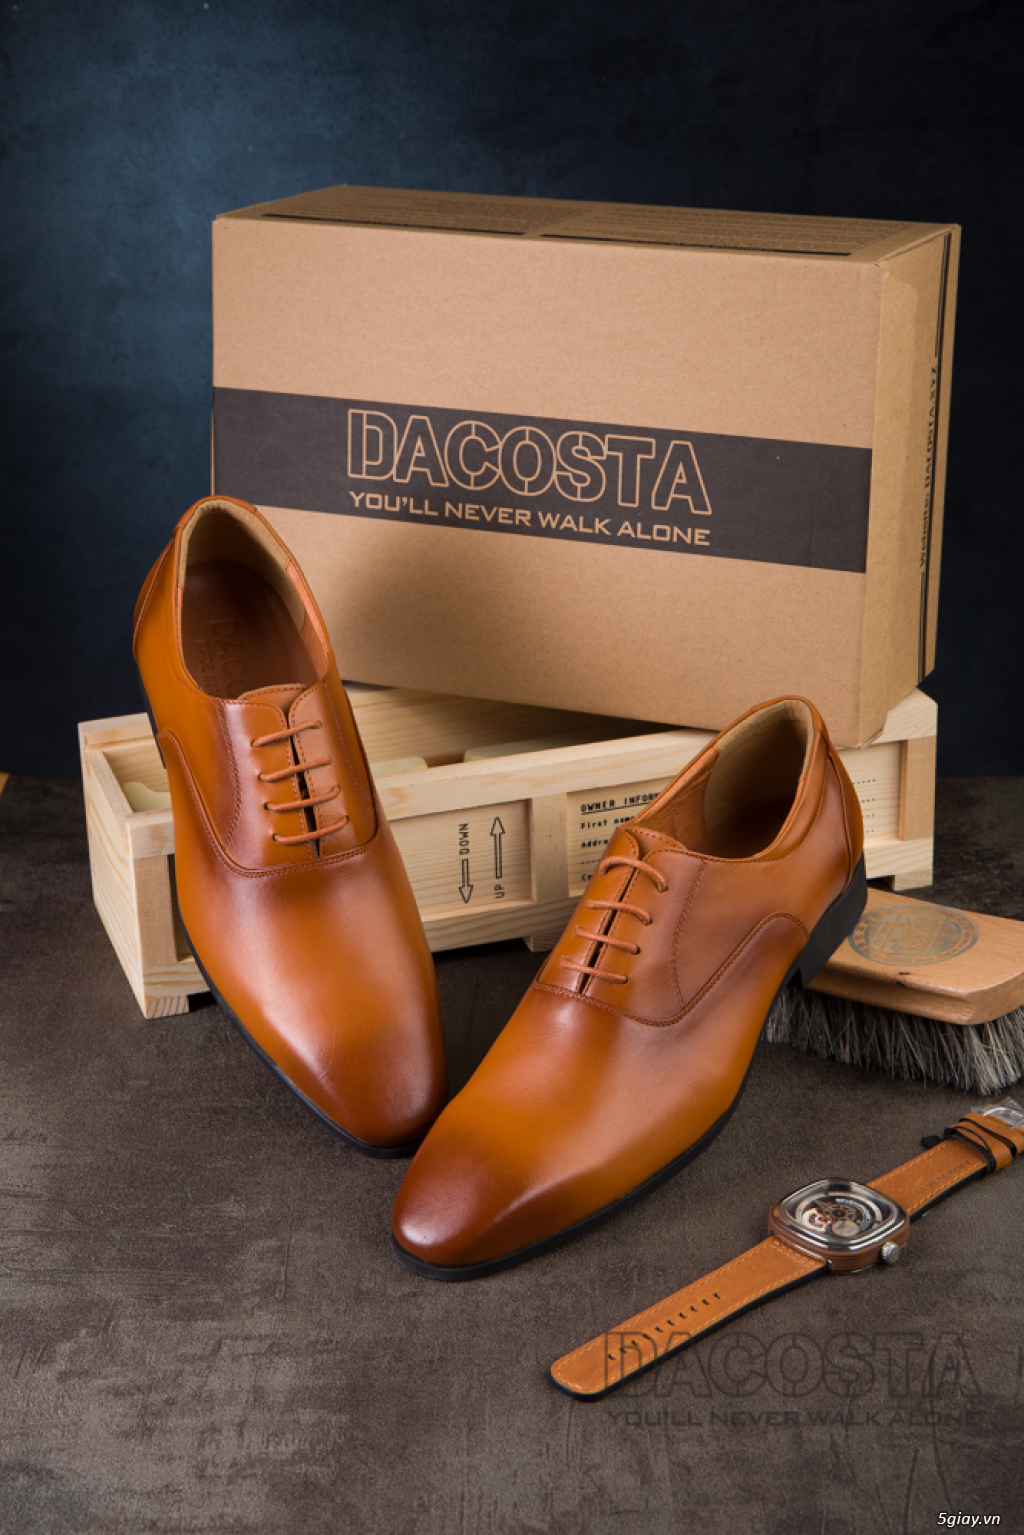 Tiệm Giày Dacosta - Những Mẫu Giày Tây Oxford Hot Nhất 2019 - 5